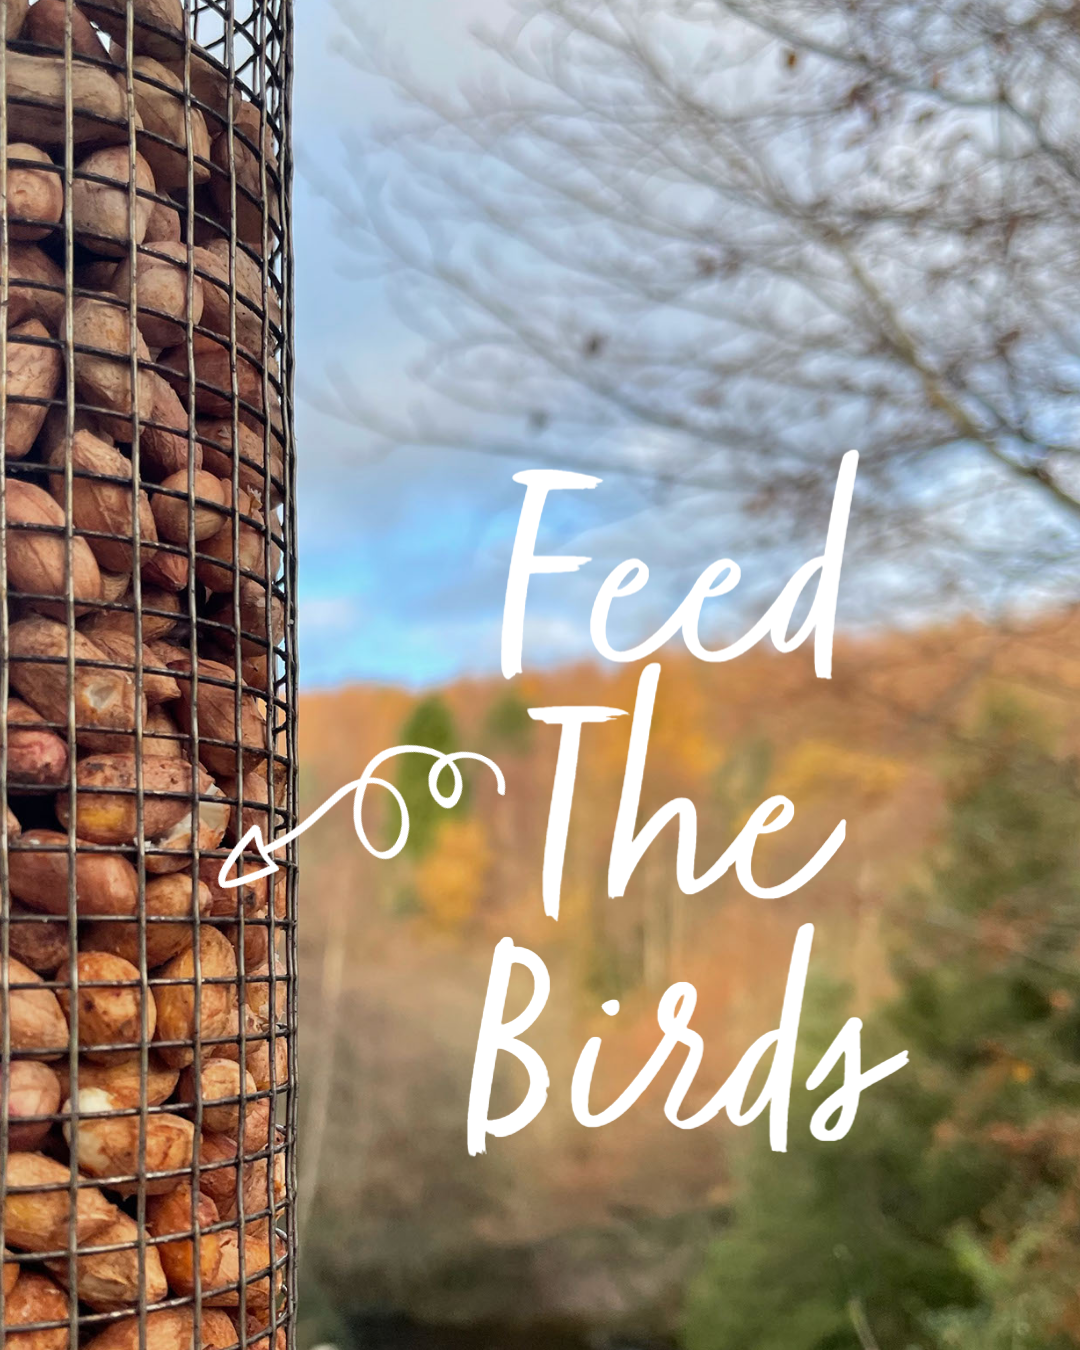 Bird Feed Jolys garden centre, Ballinacoola, Glenealy, Co. Wicklow, A67 X940